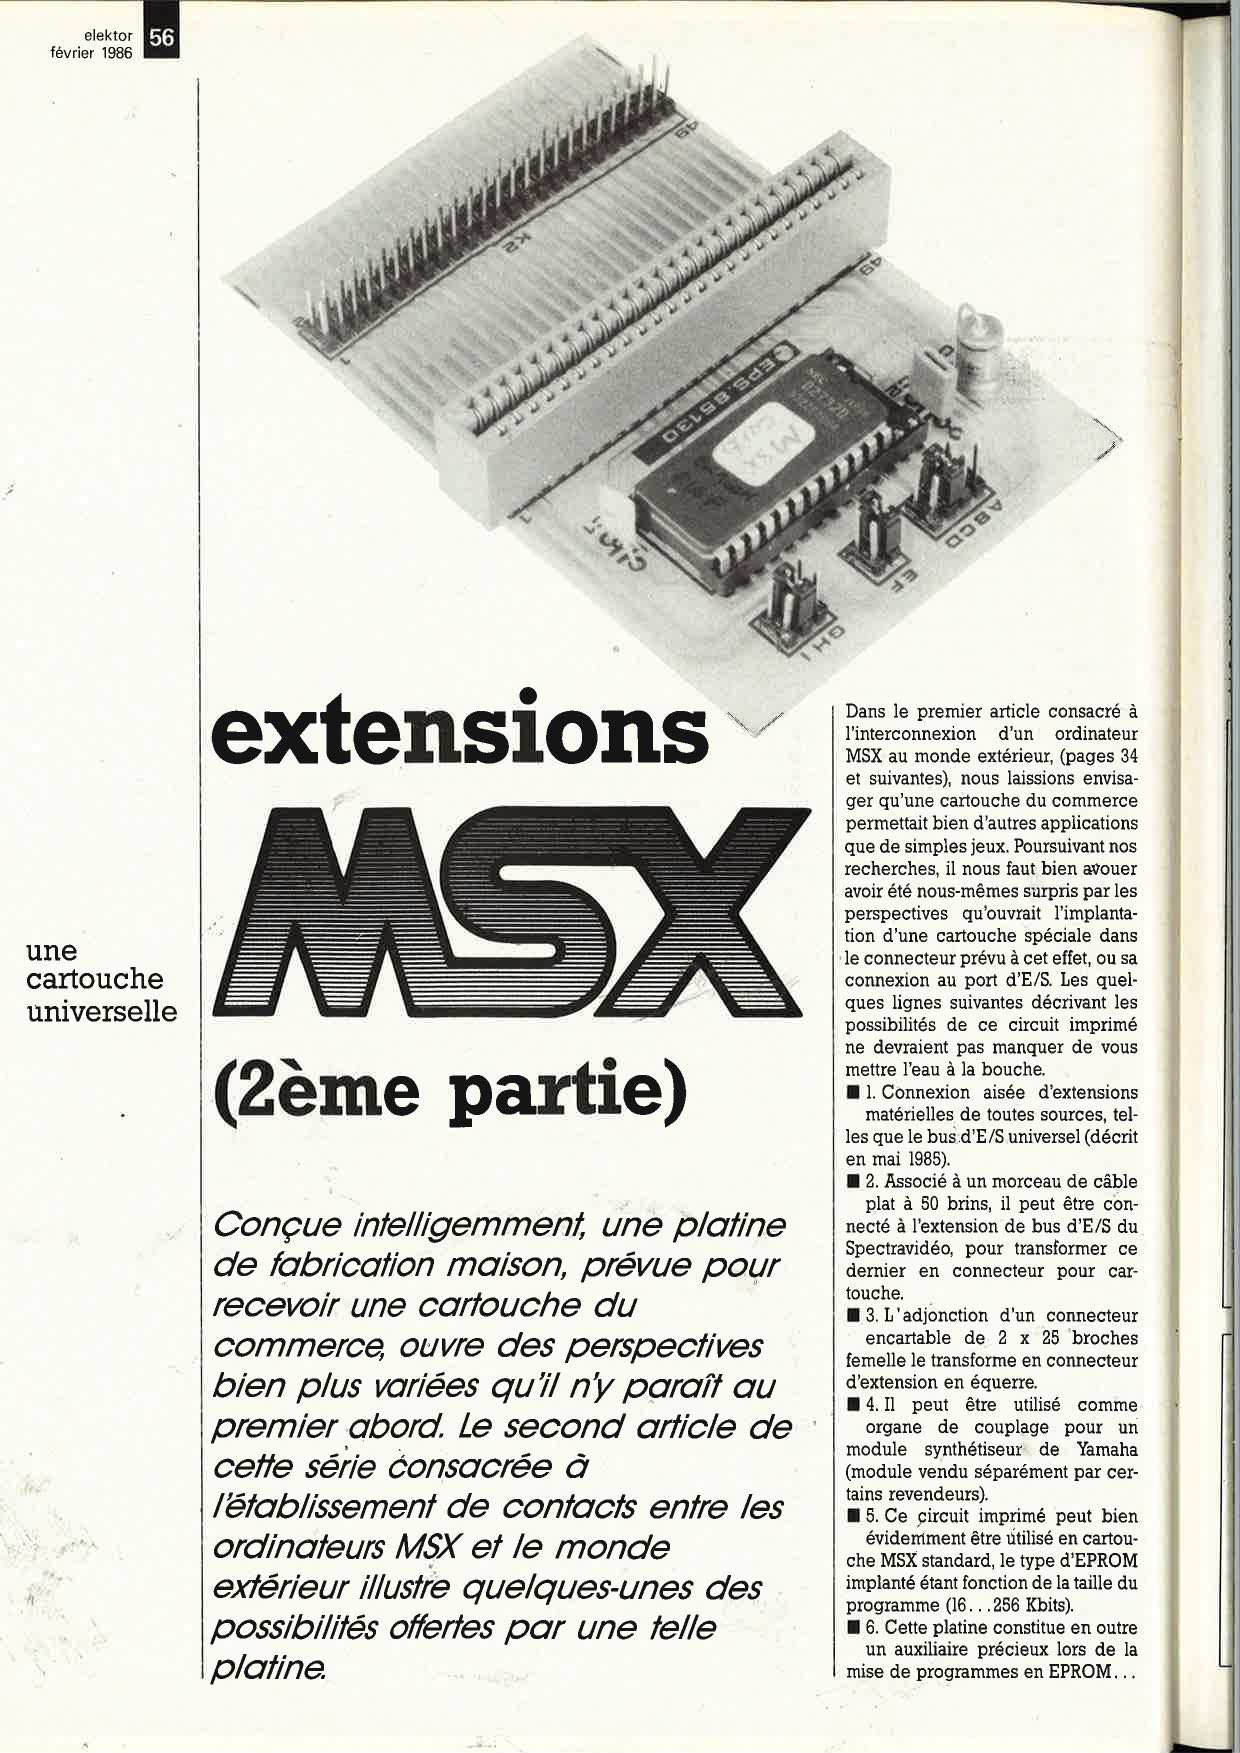 Extensions MSX: une cartouche universelle.